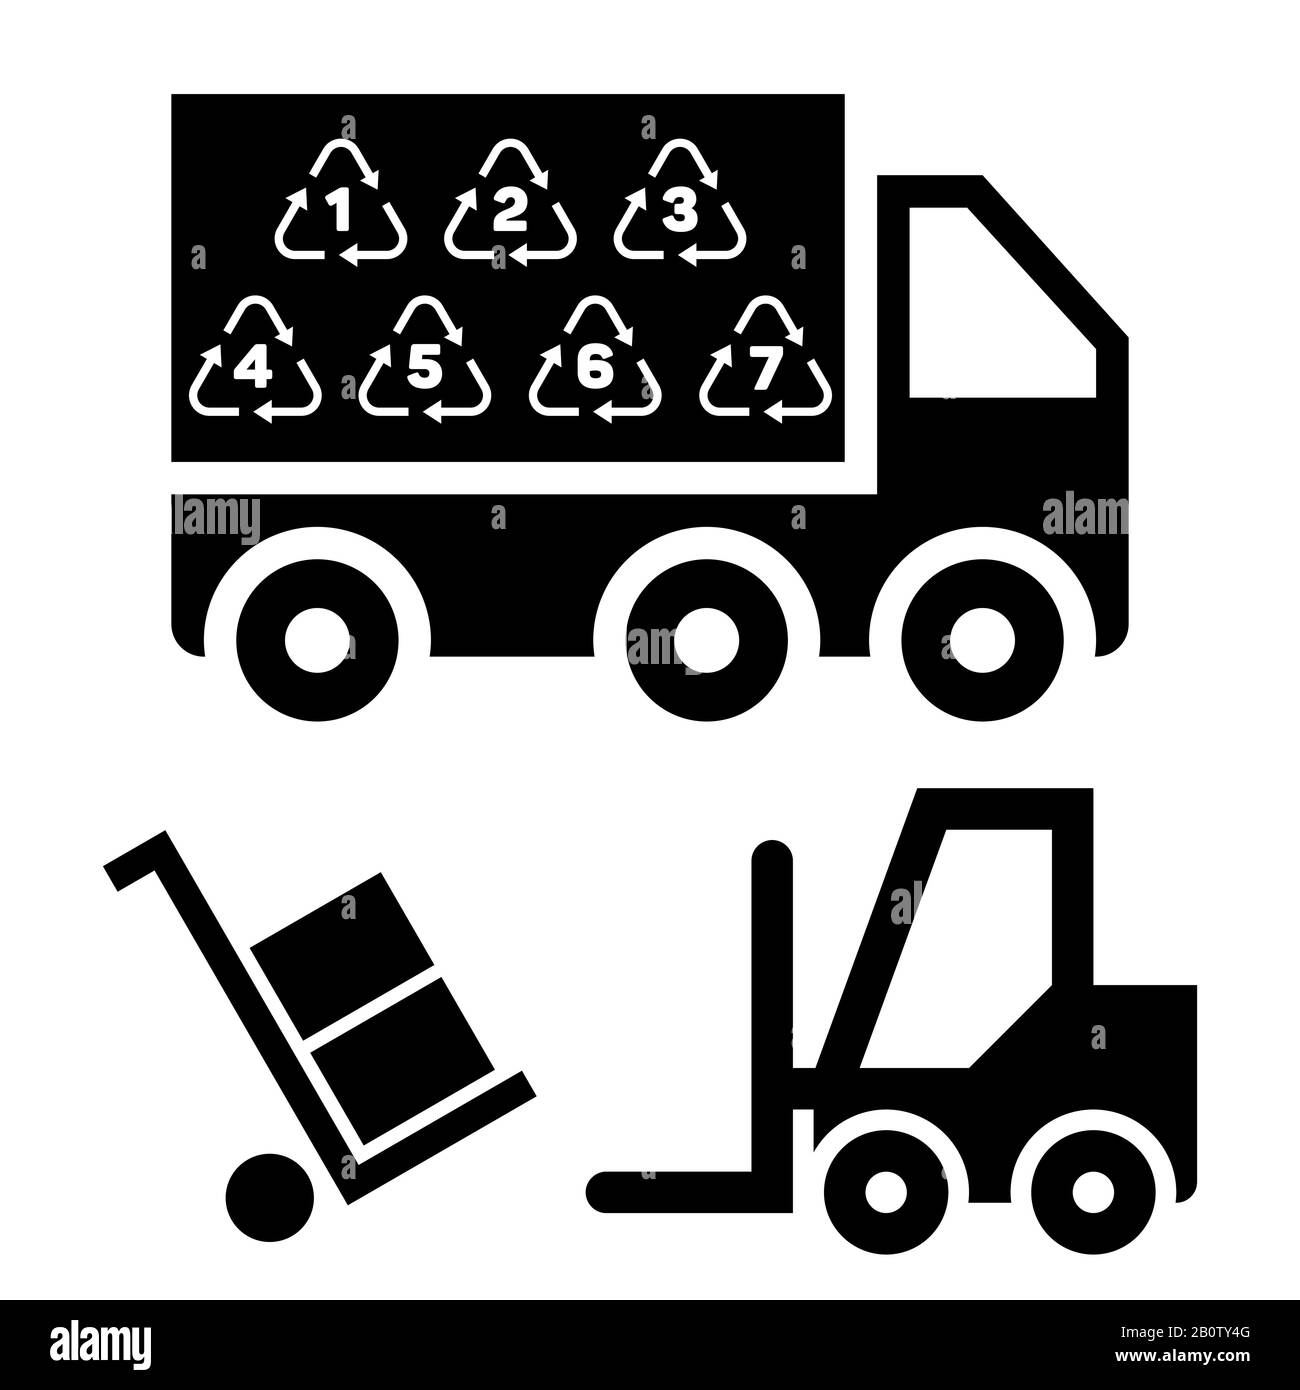 Illustrazione della consegna logistica e del trasporto con piattaforme di carico e camion. Vettore industriale dei veicoli industriali Illustrazione Vettoriale